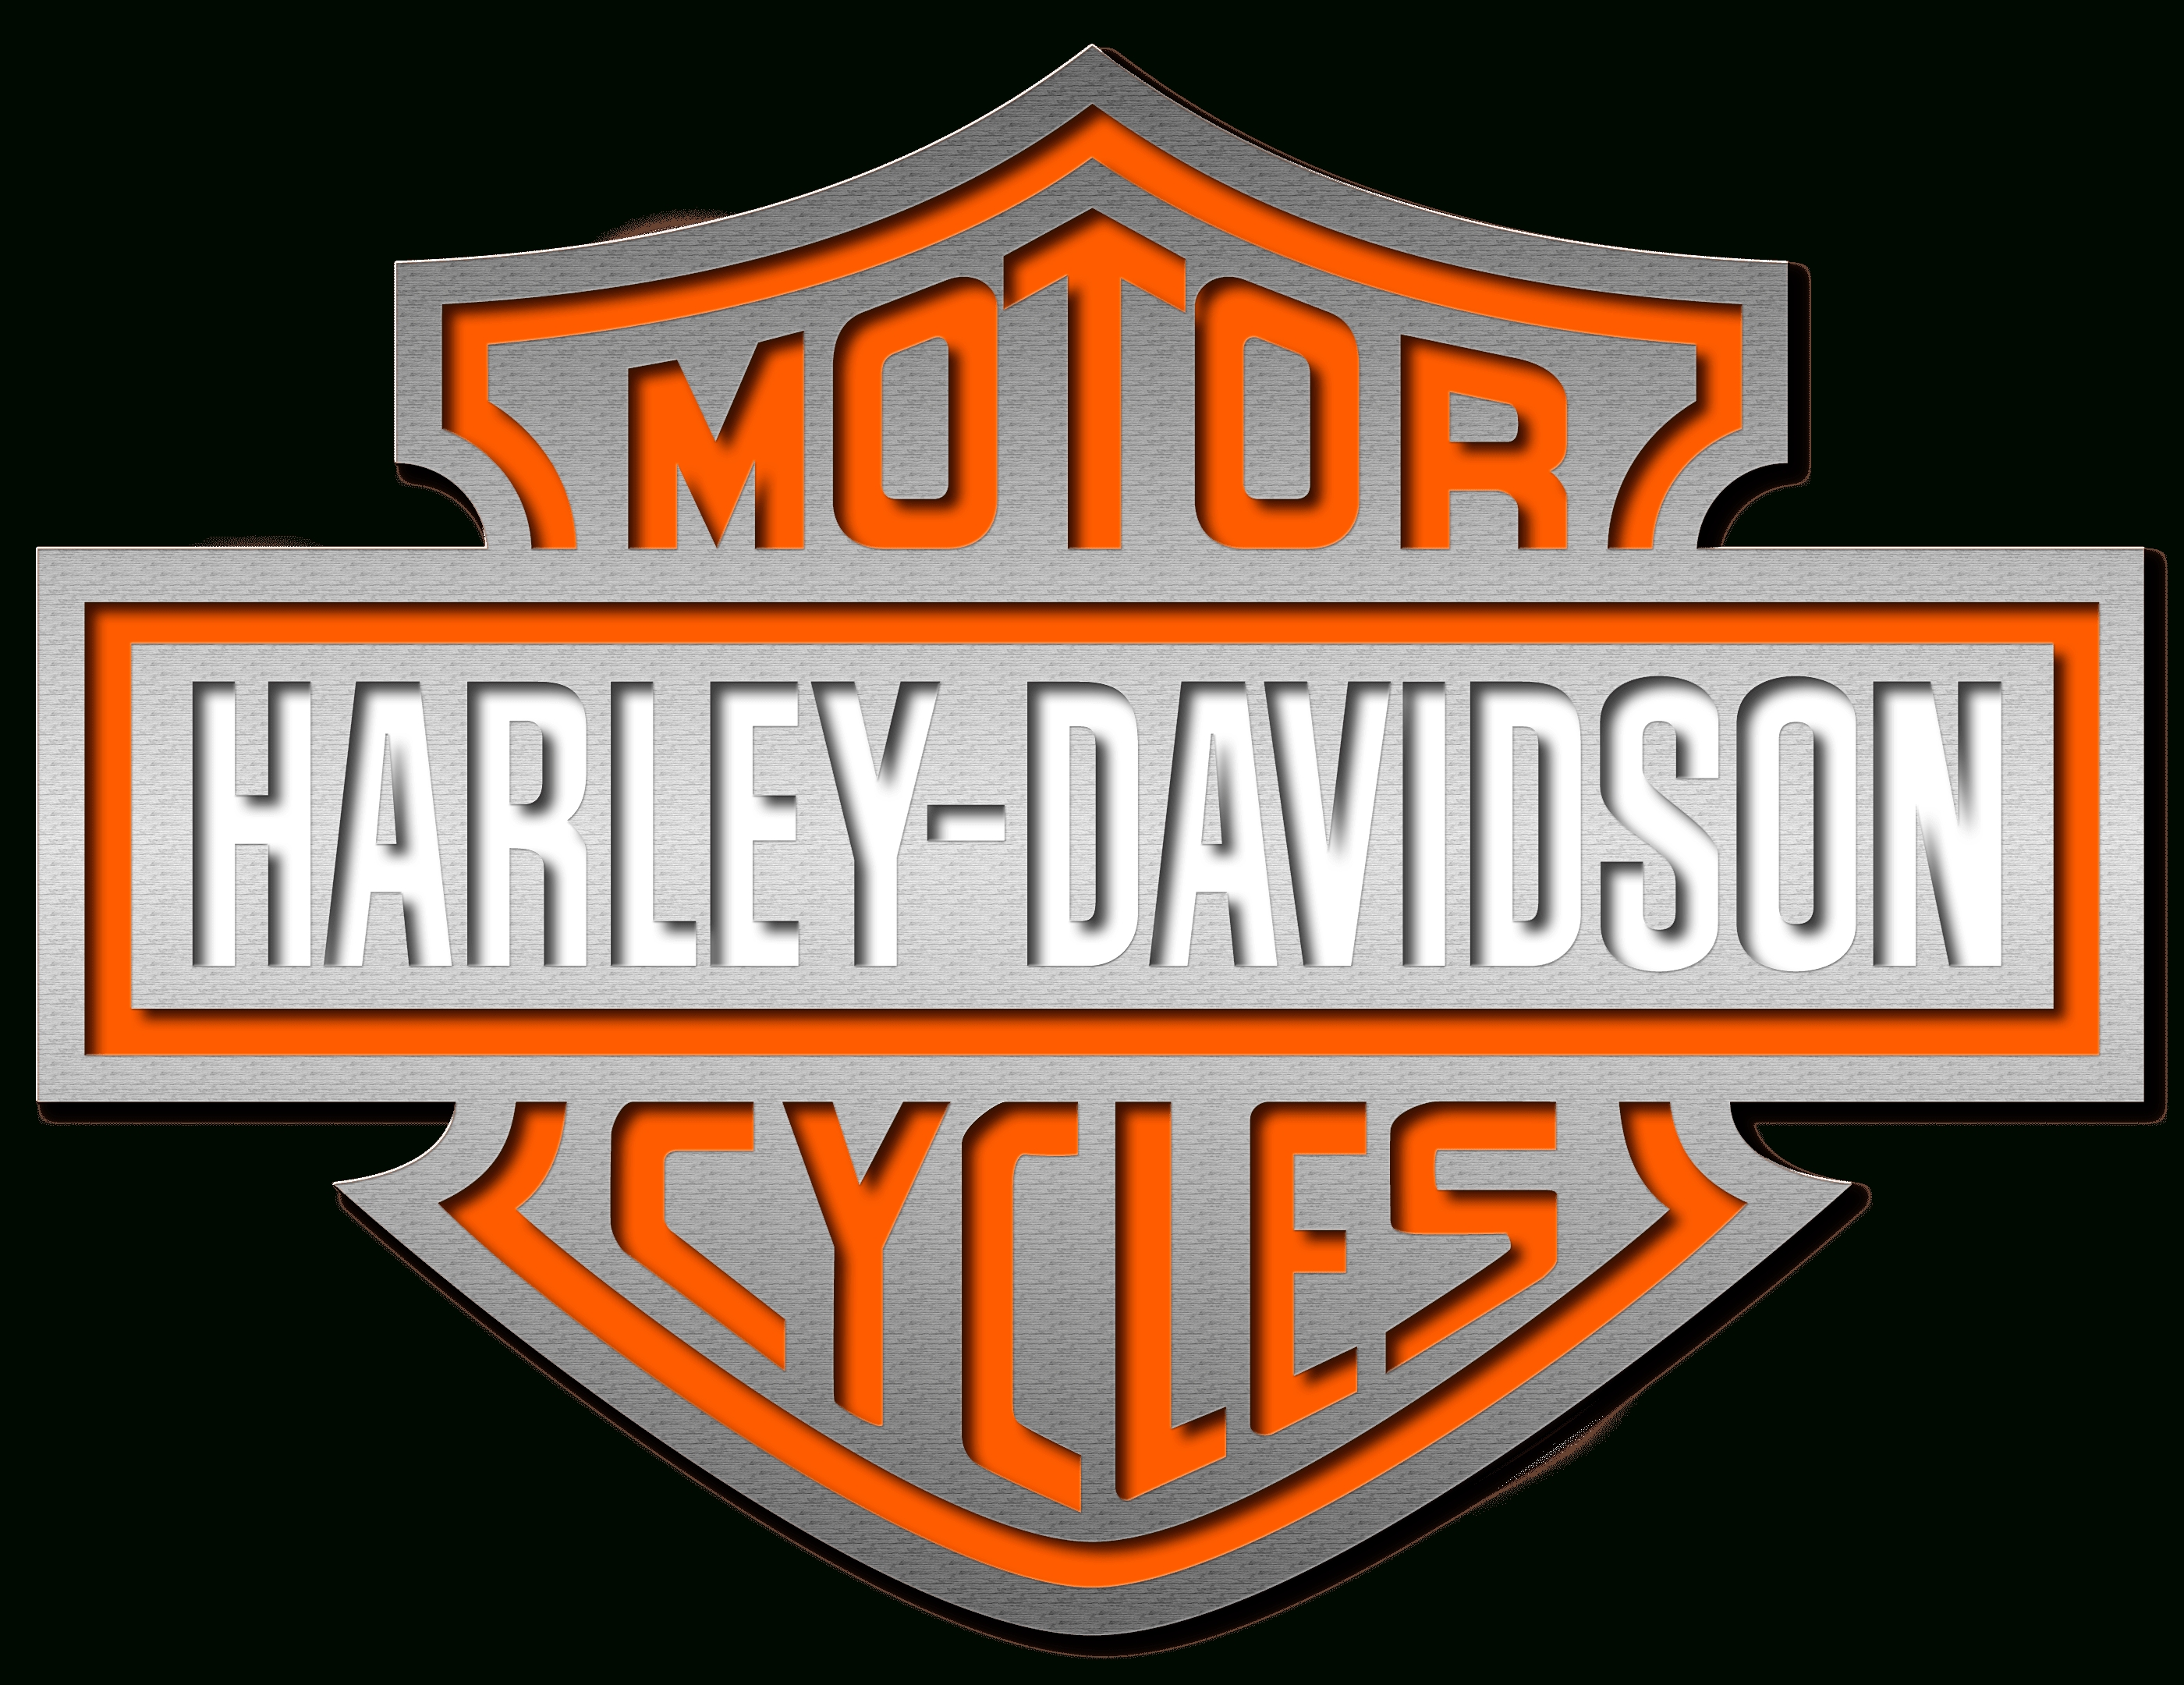 10 Best Harley Davidson Emblem Images FULL HD 1920×1080 For PC Desktop 2020